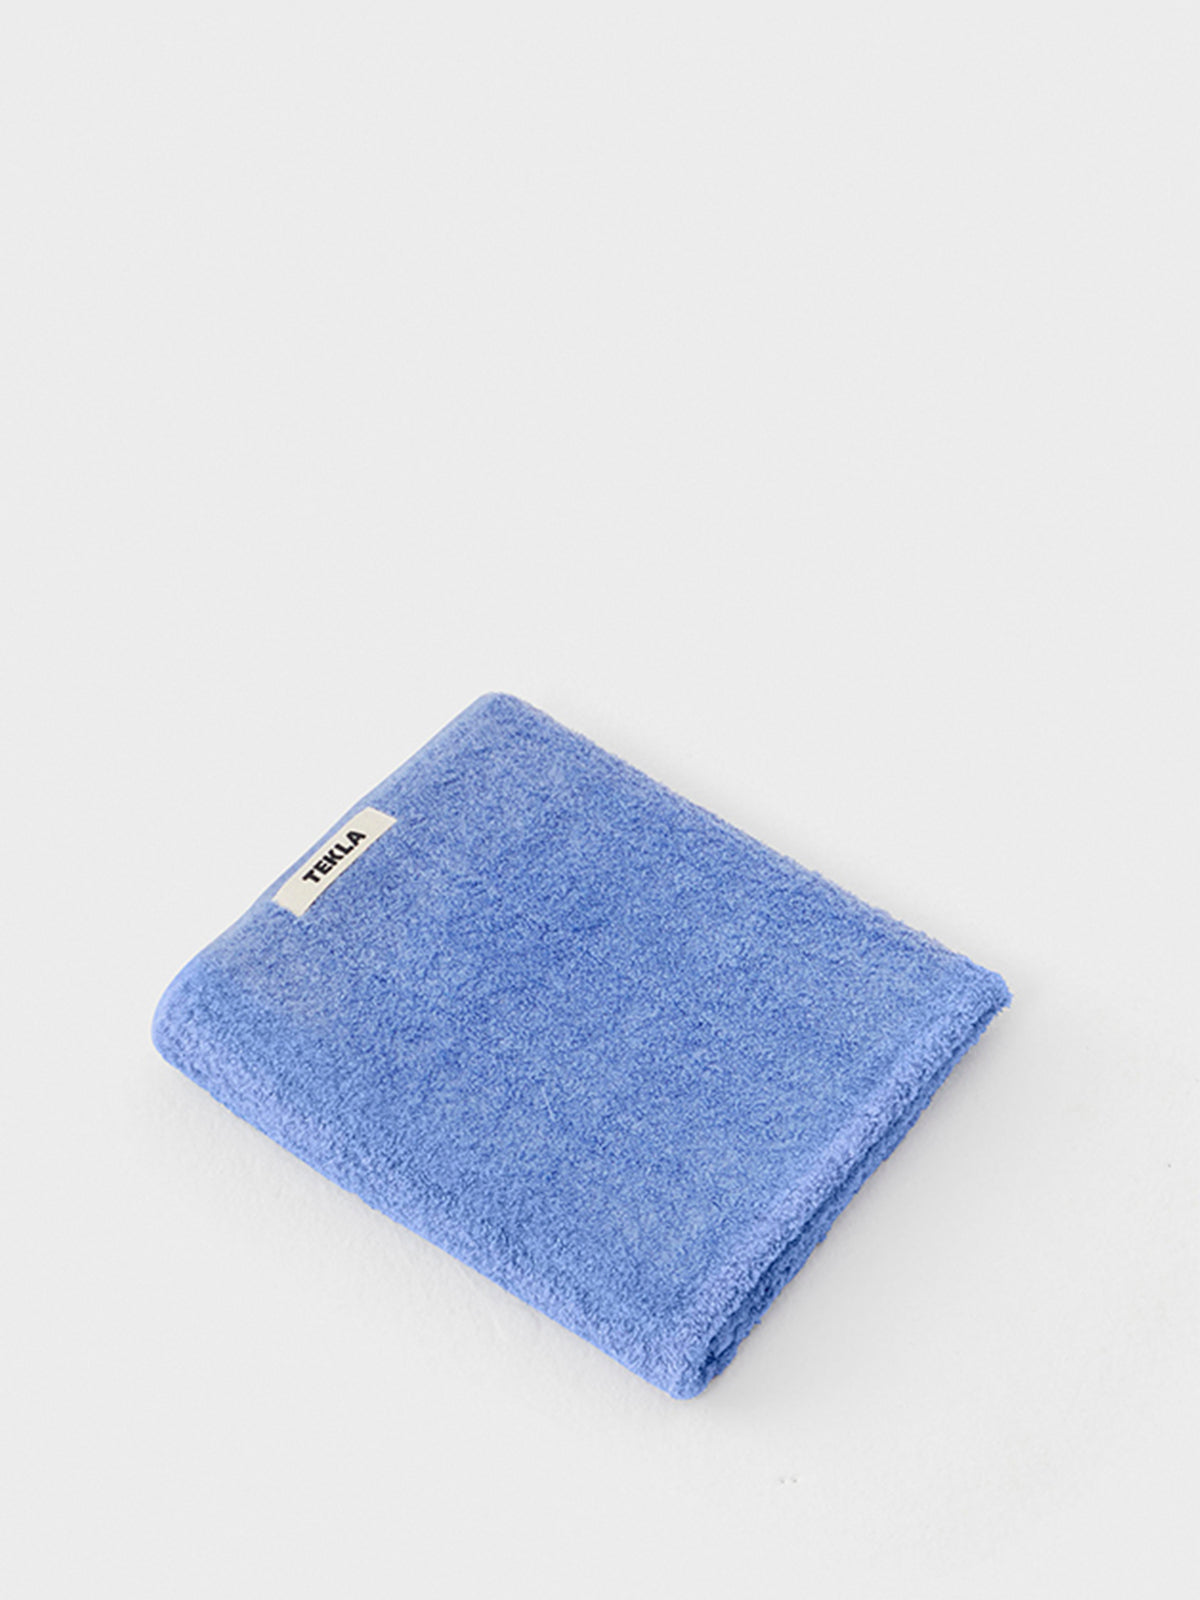 Tekla - Hand Towel in Clear Blue